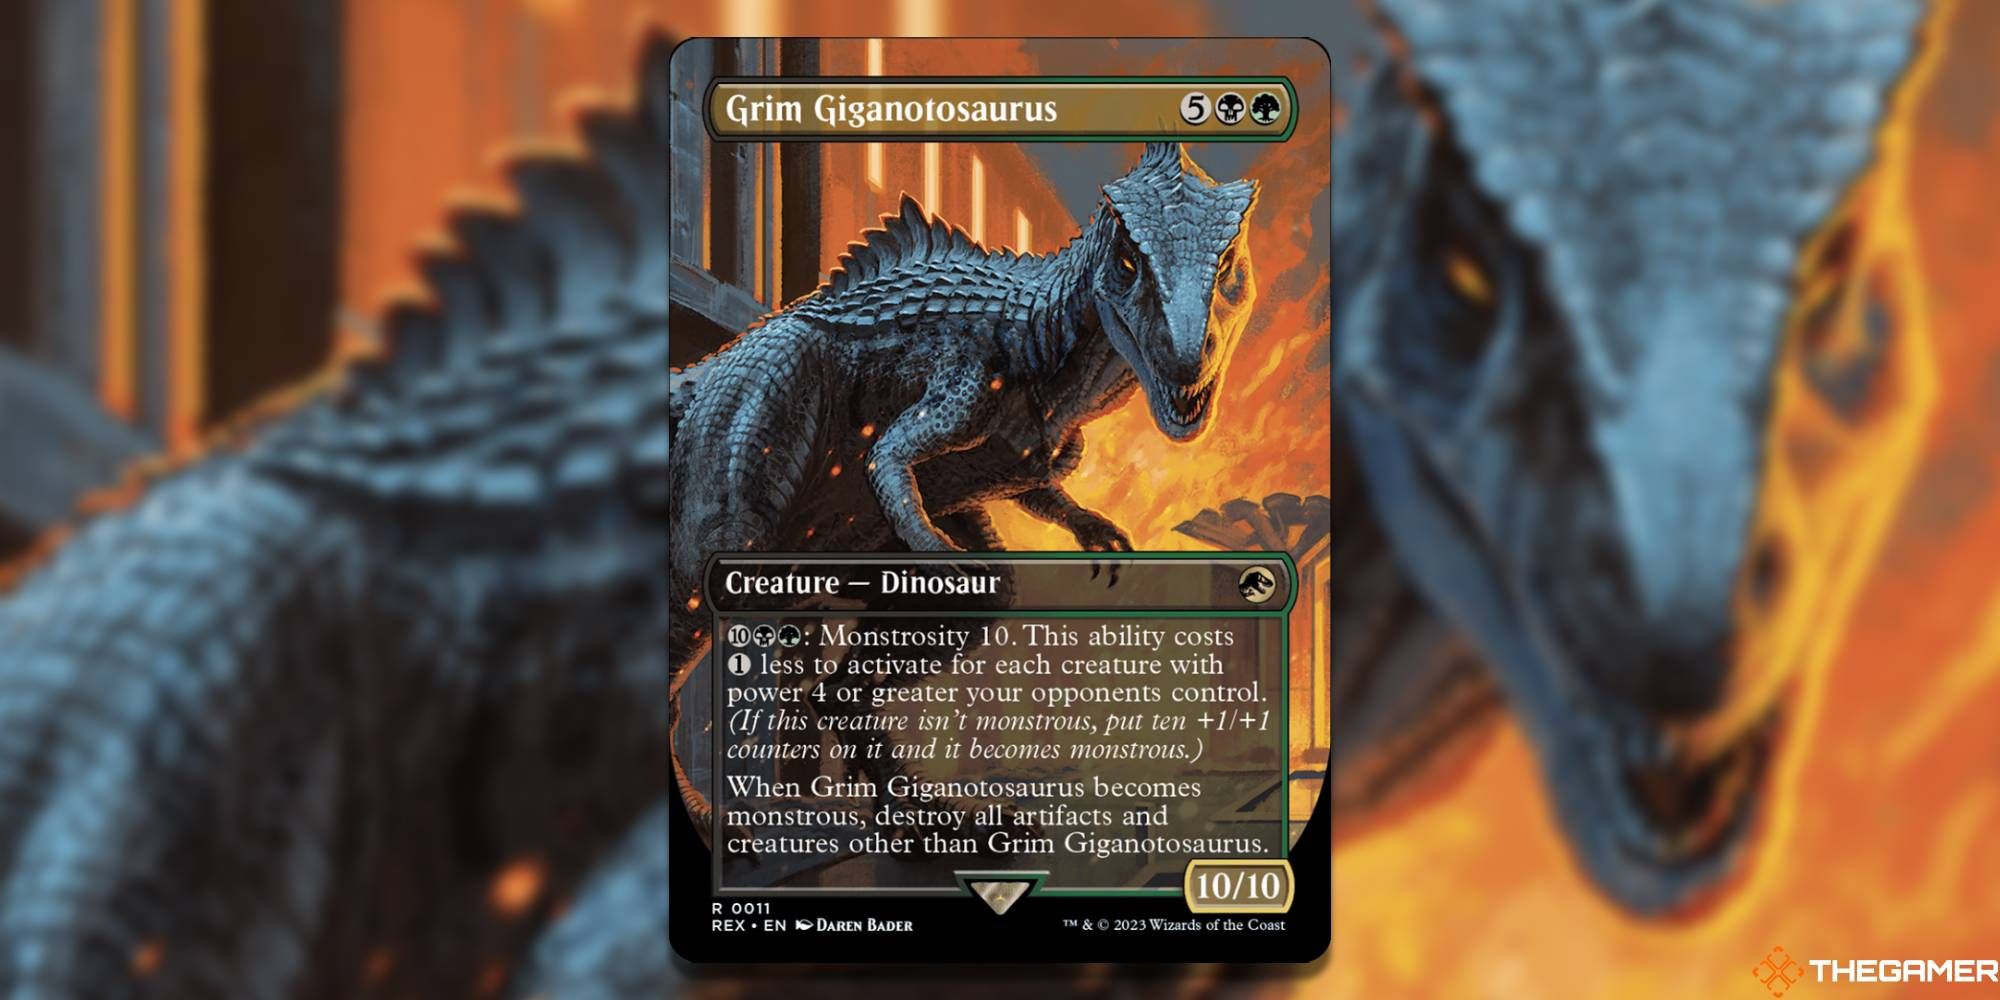 Grim Giganotosaurus by Daren Bader